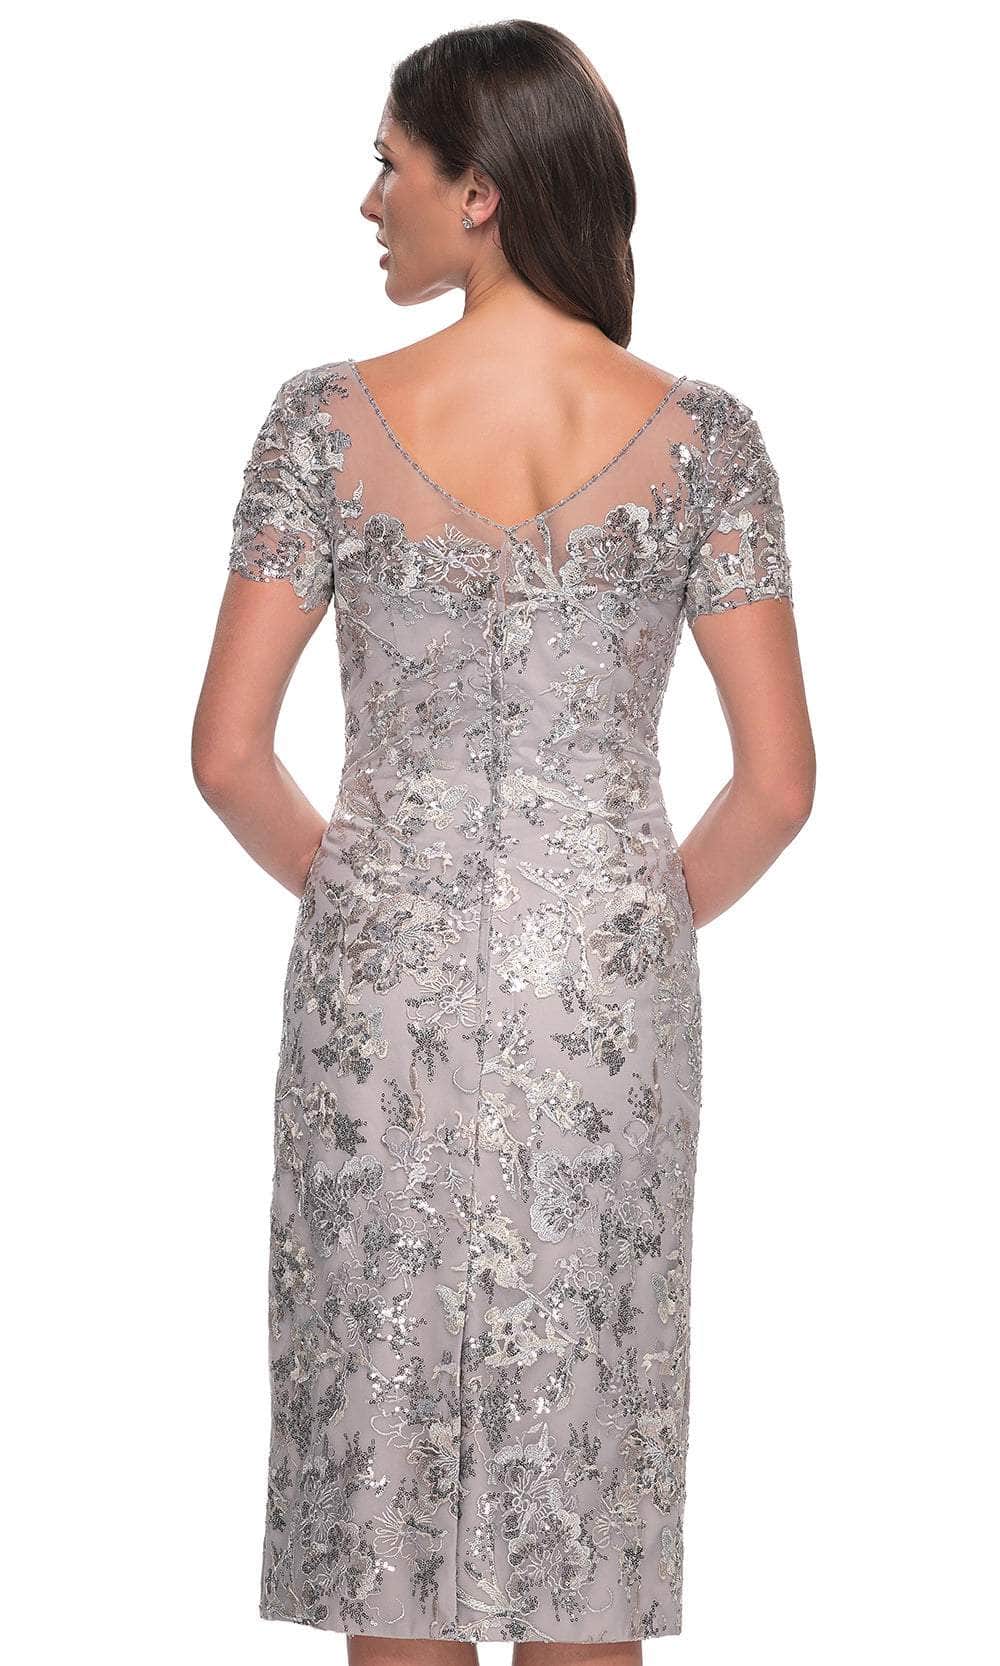 La Femme 30854 - Embroidered Knee-Length Dress Mother of the Bride Dresses